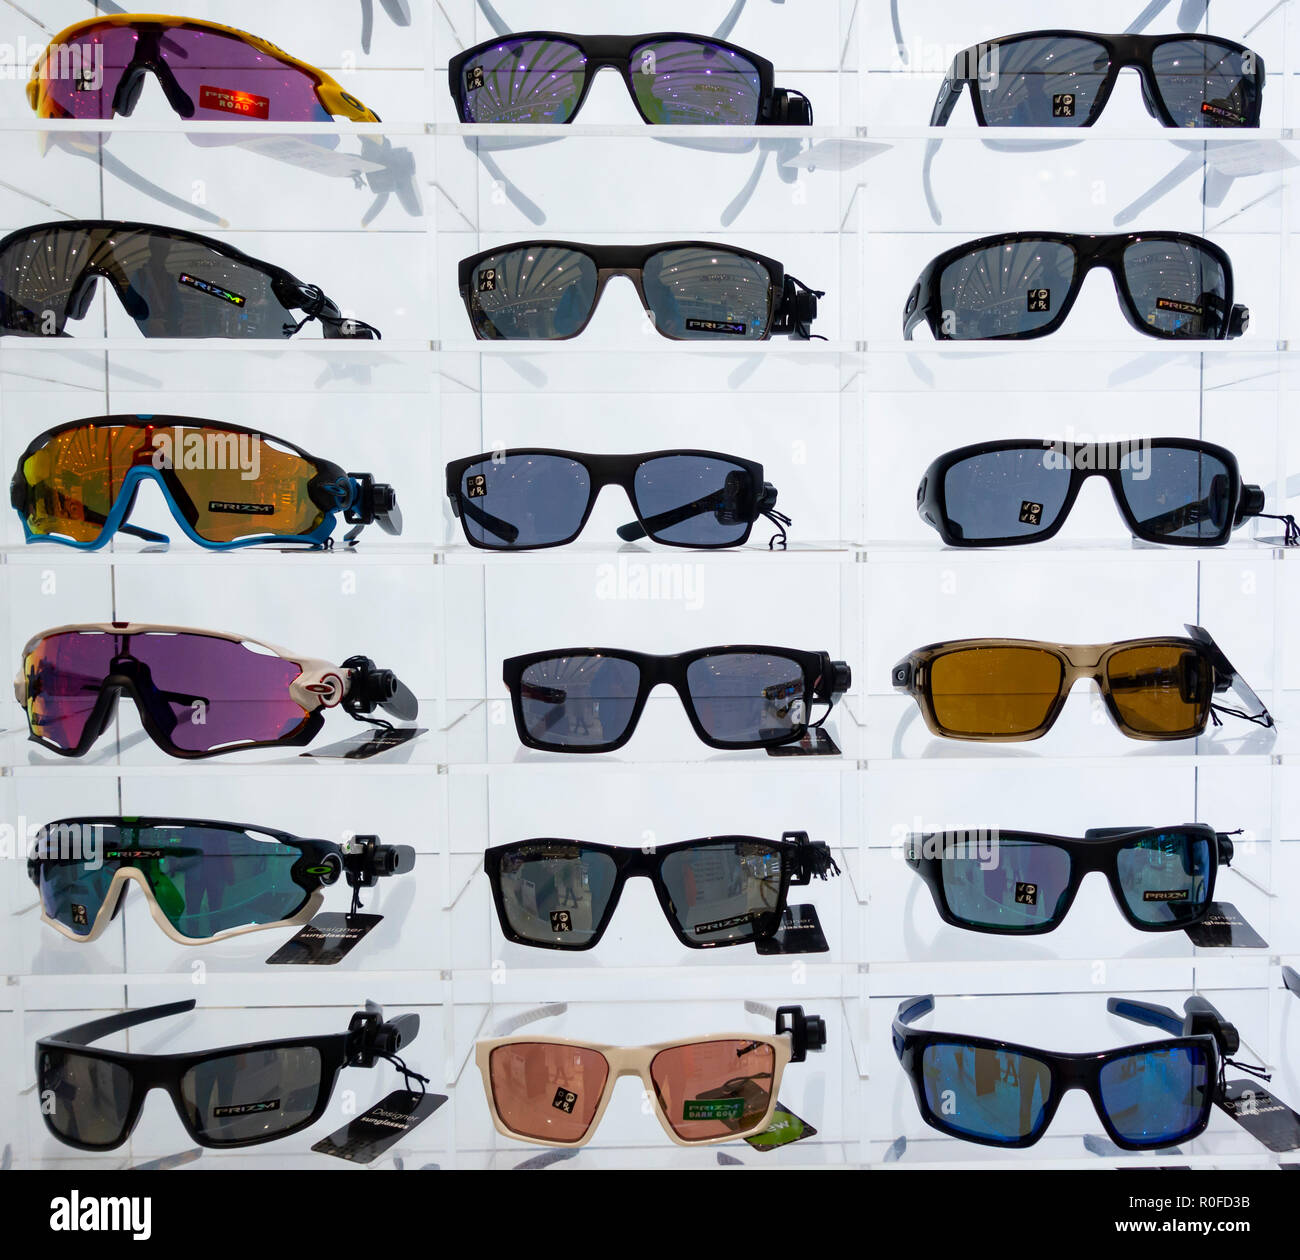 oakley sunglasses stock